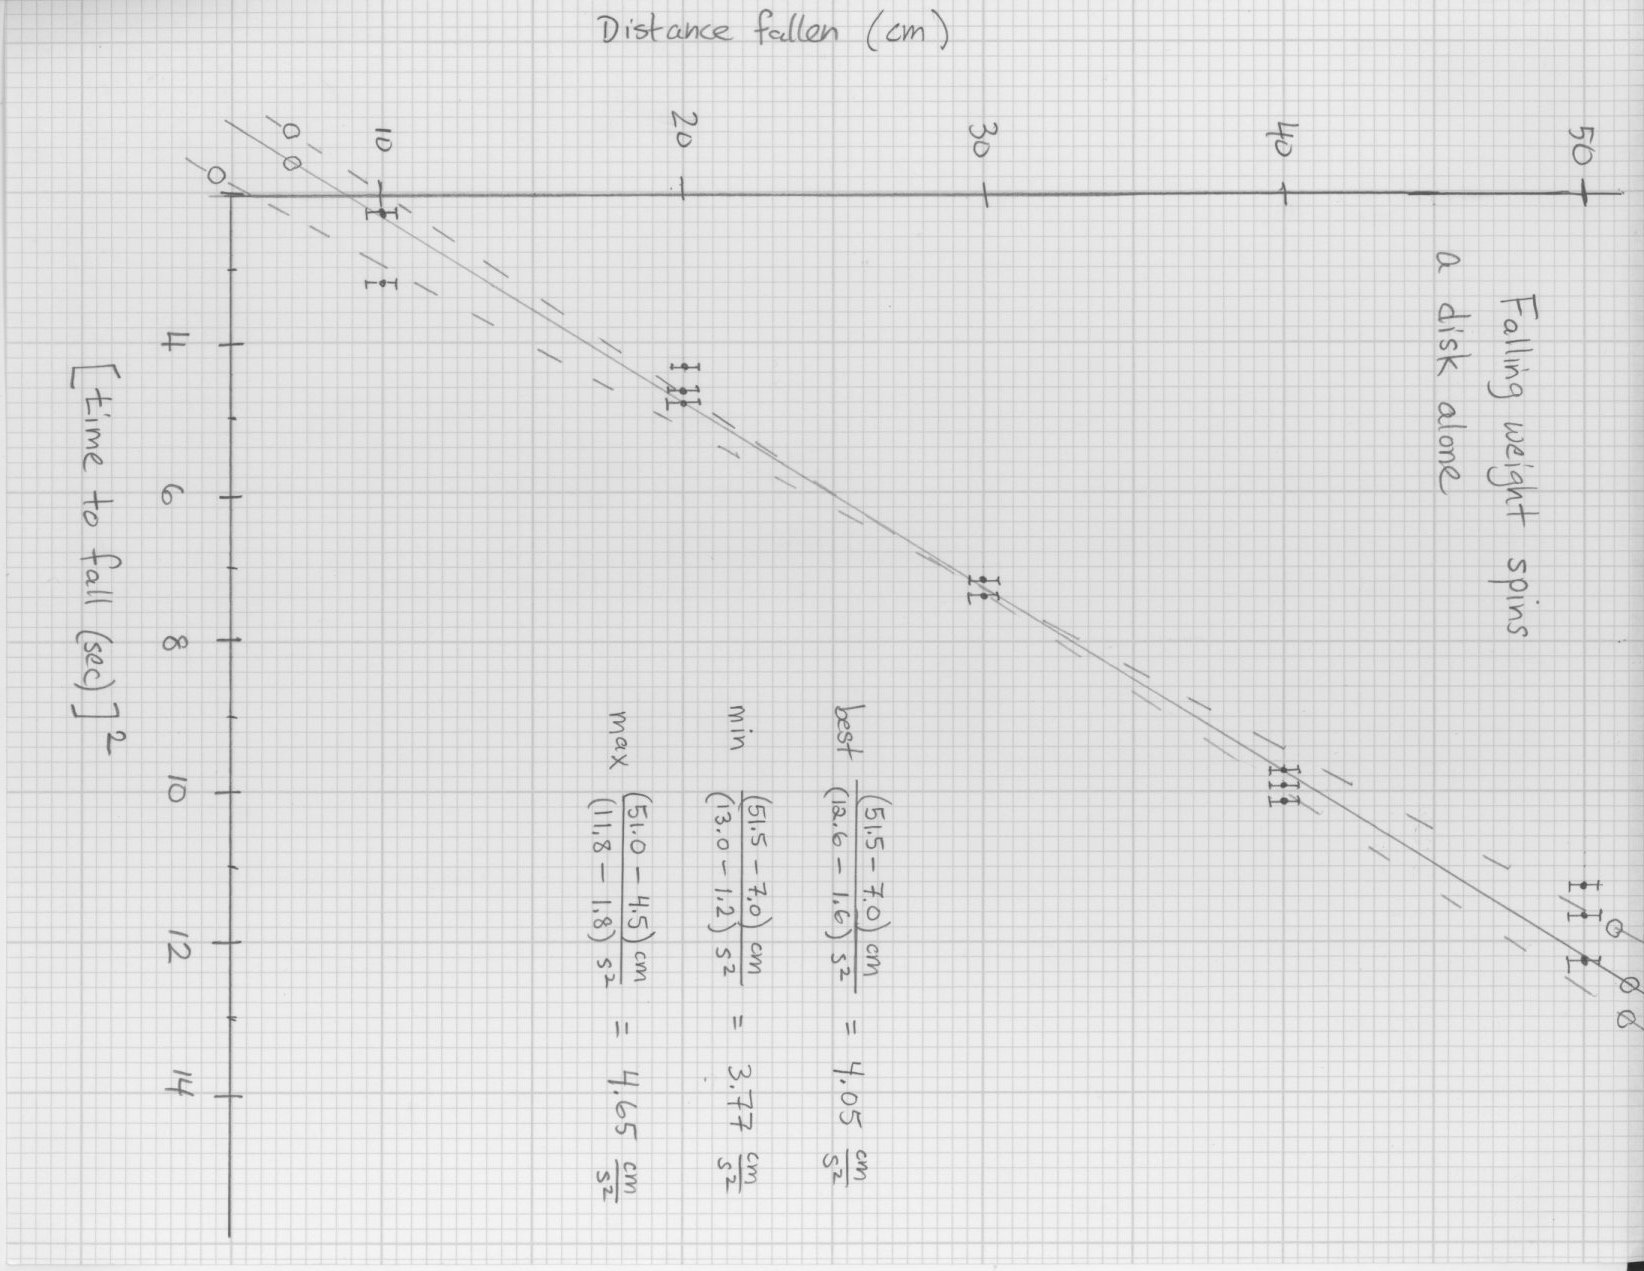 calculate moment of inertia from precession period